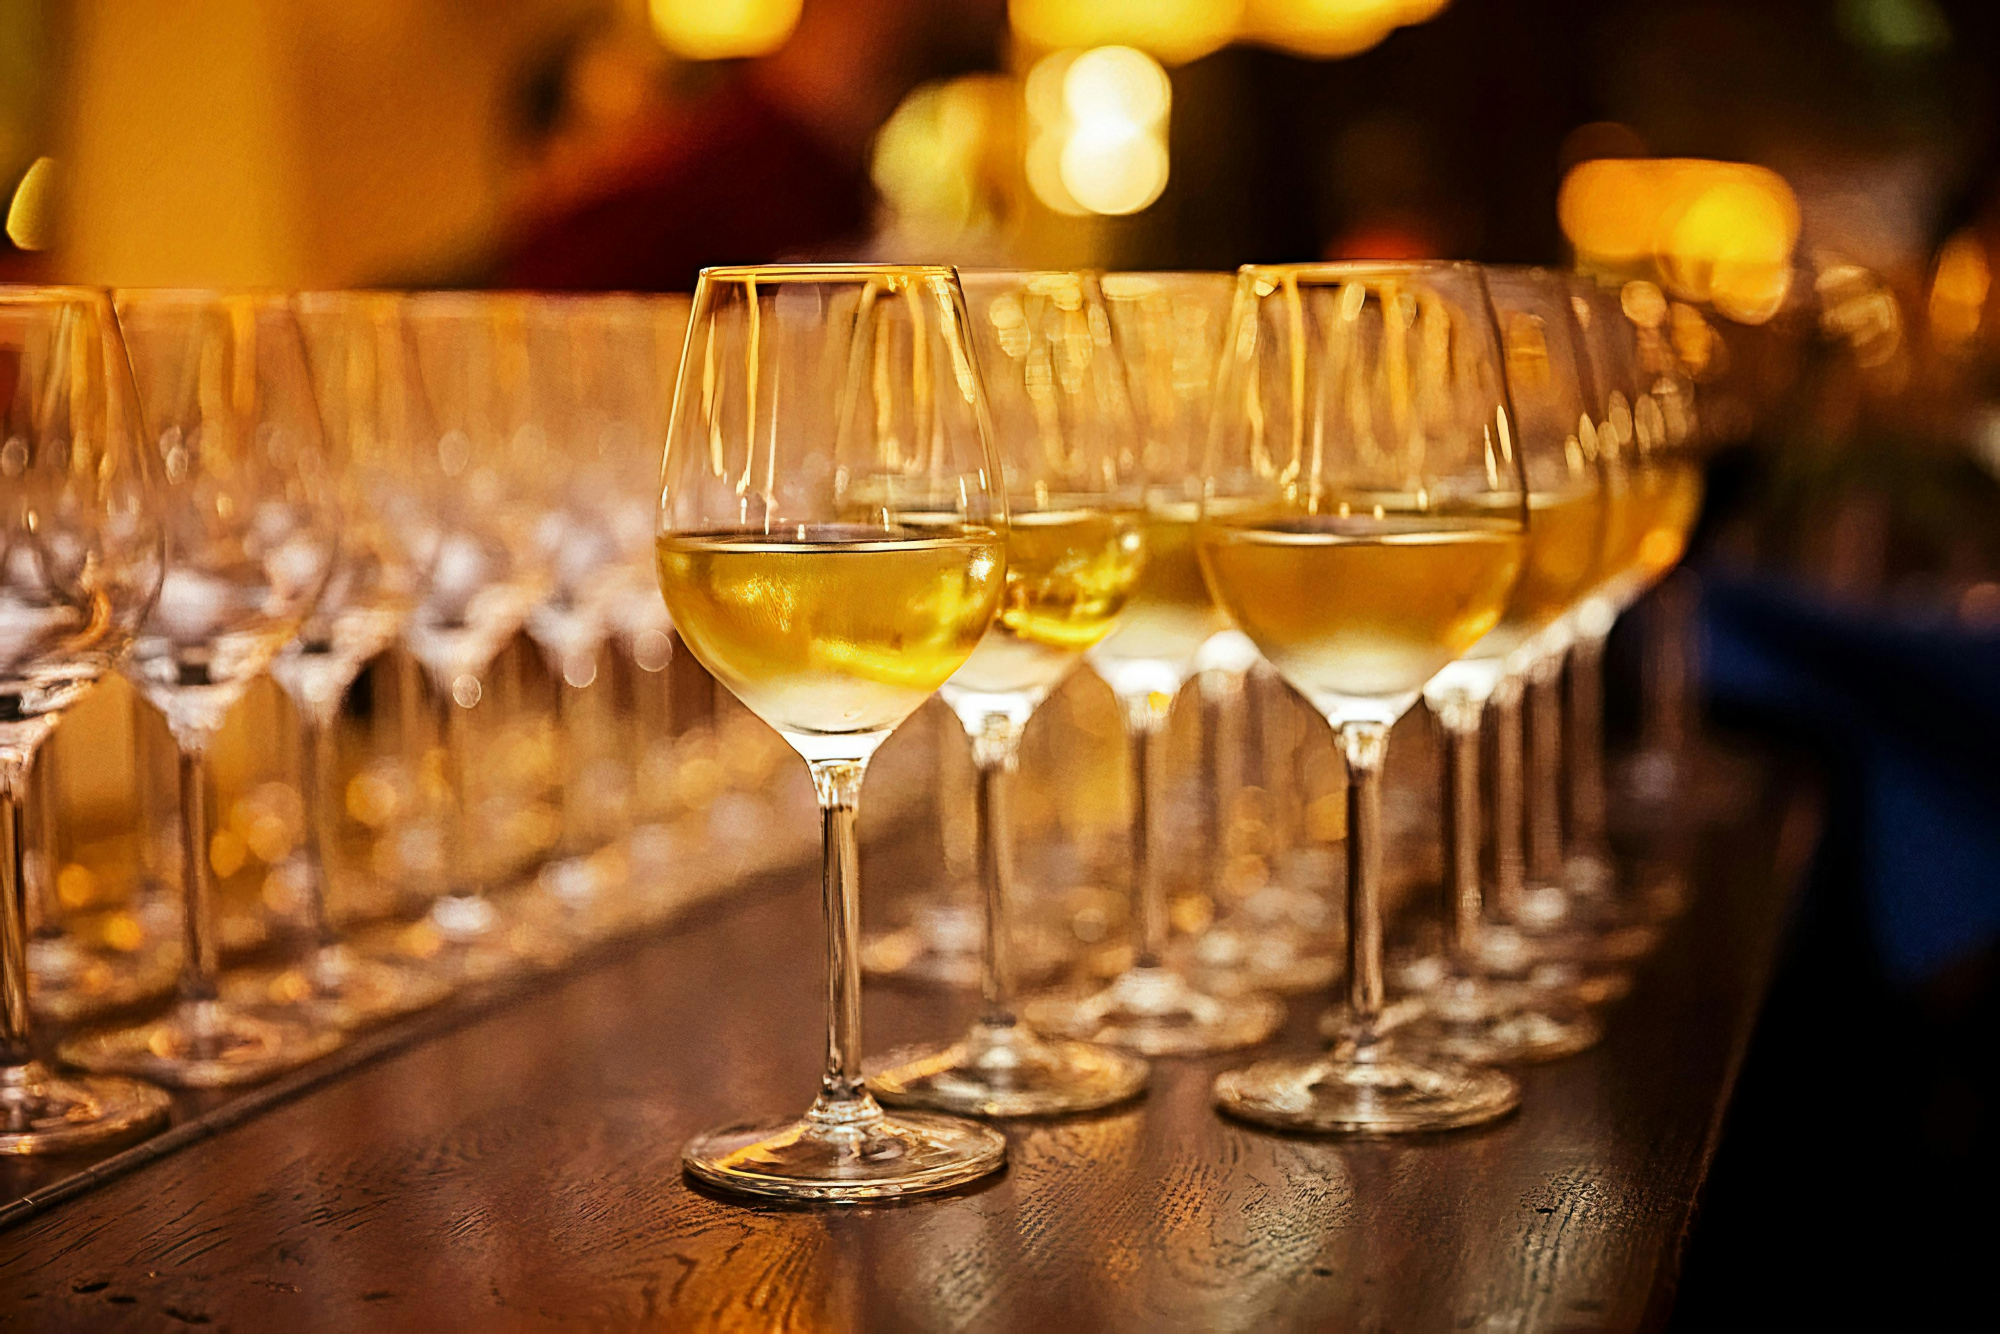 découvrez une sélection de verres à vin élégants pour sublimer votre dégustation. des designs raffinés et une qualité exceptionnelle pour savourer chaque goutte de votre vin préféré.